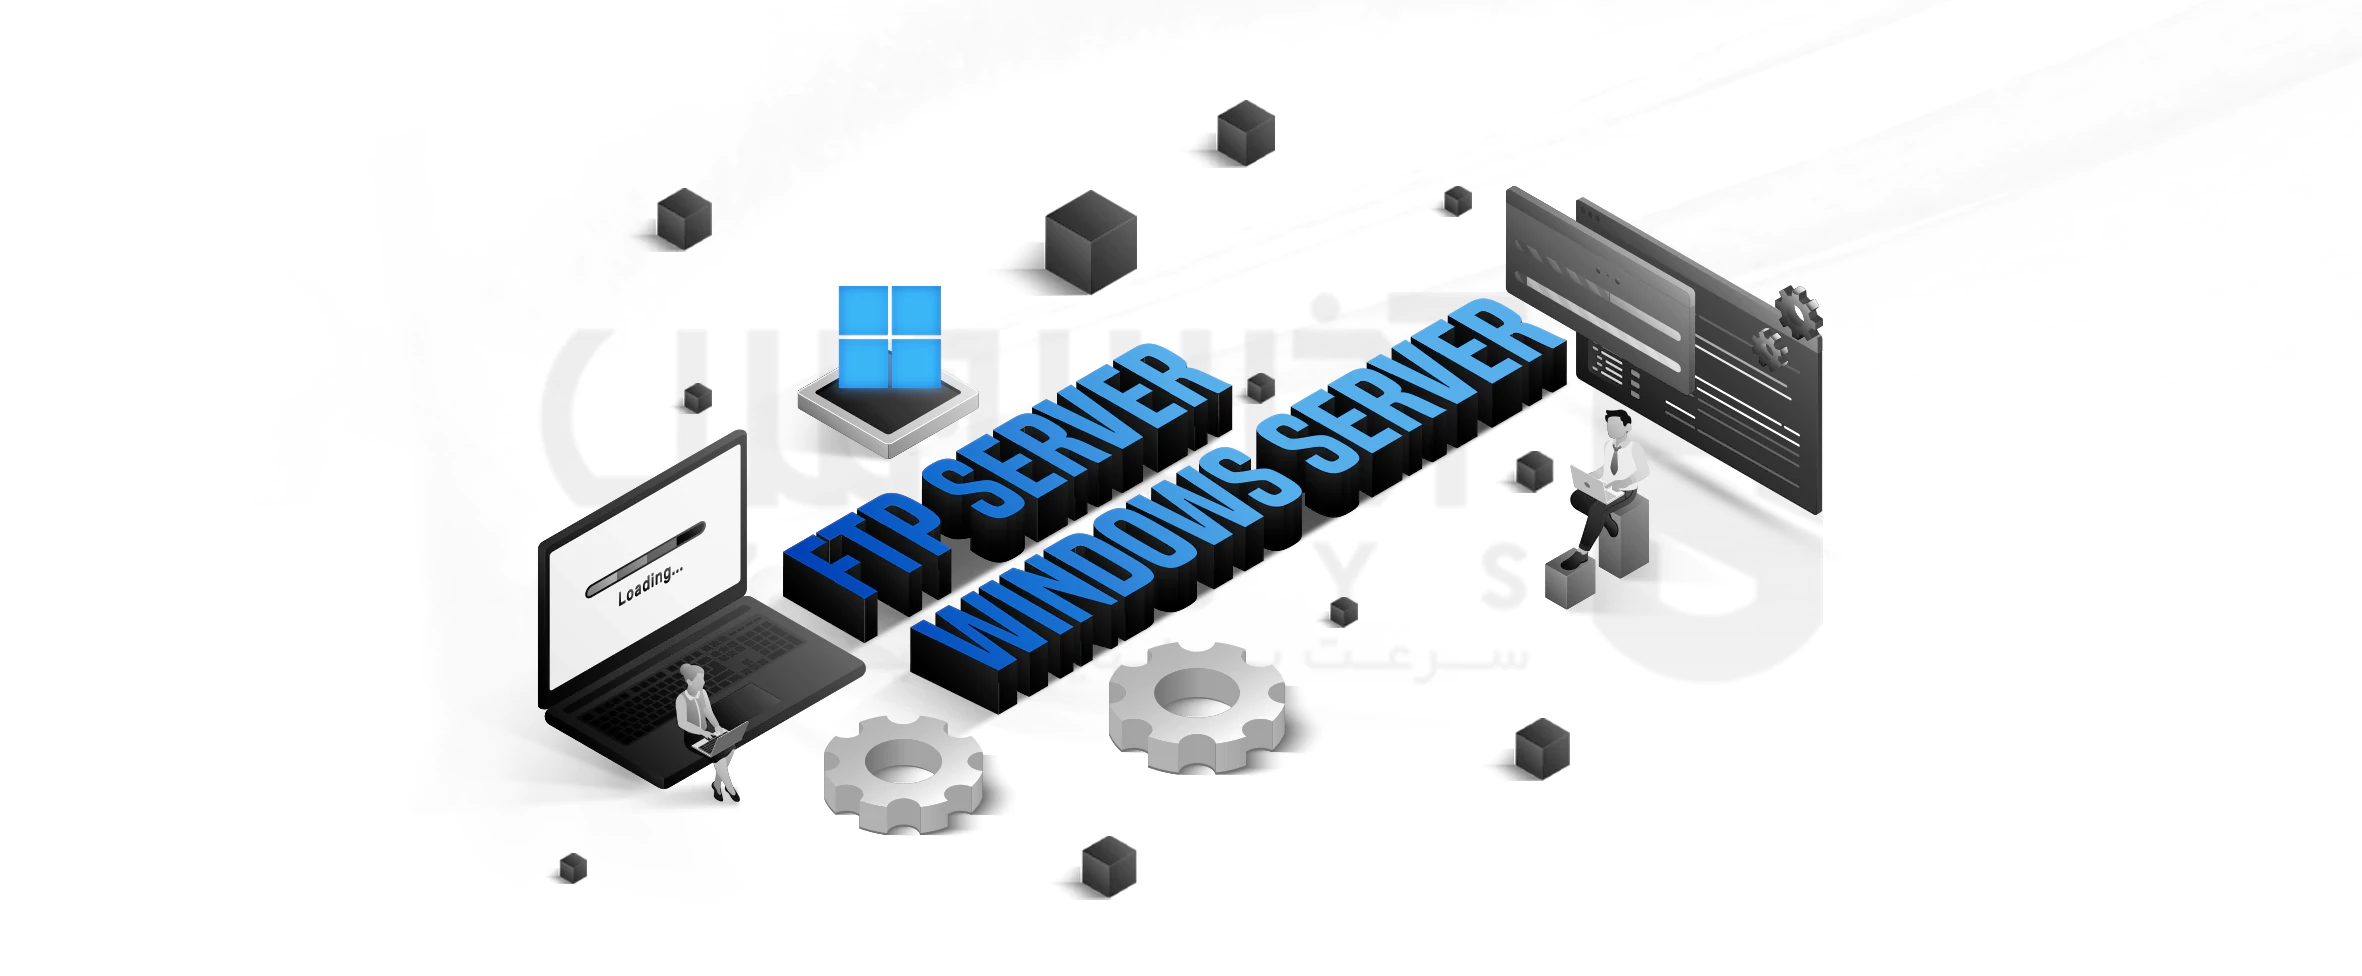 راه اندازی ftp server در ویندوز سرور 2019: راهنمای جامع